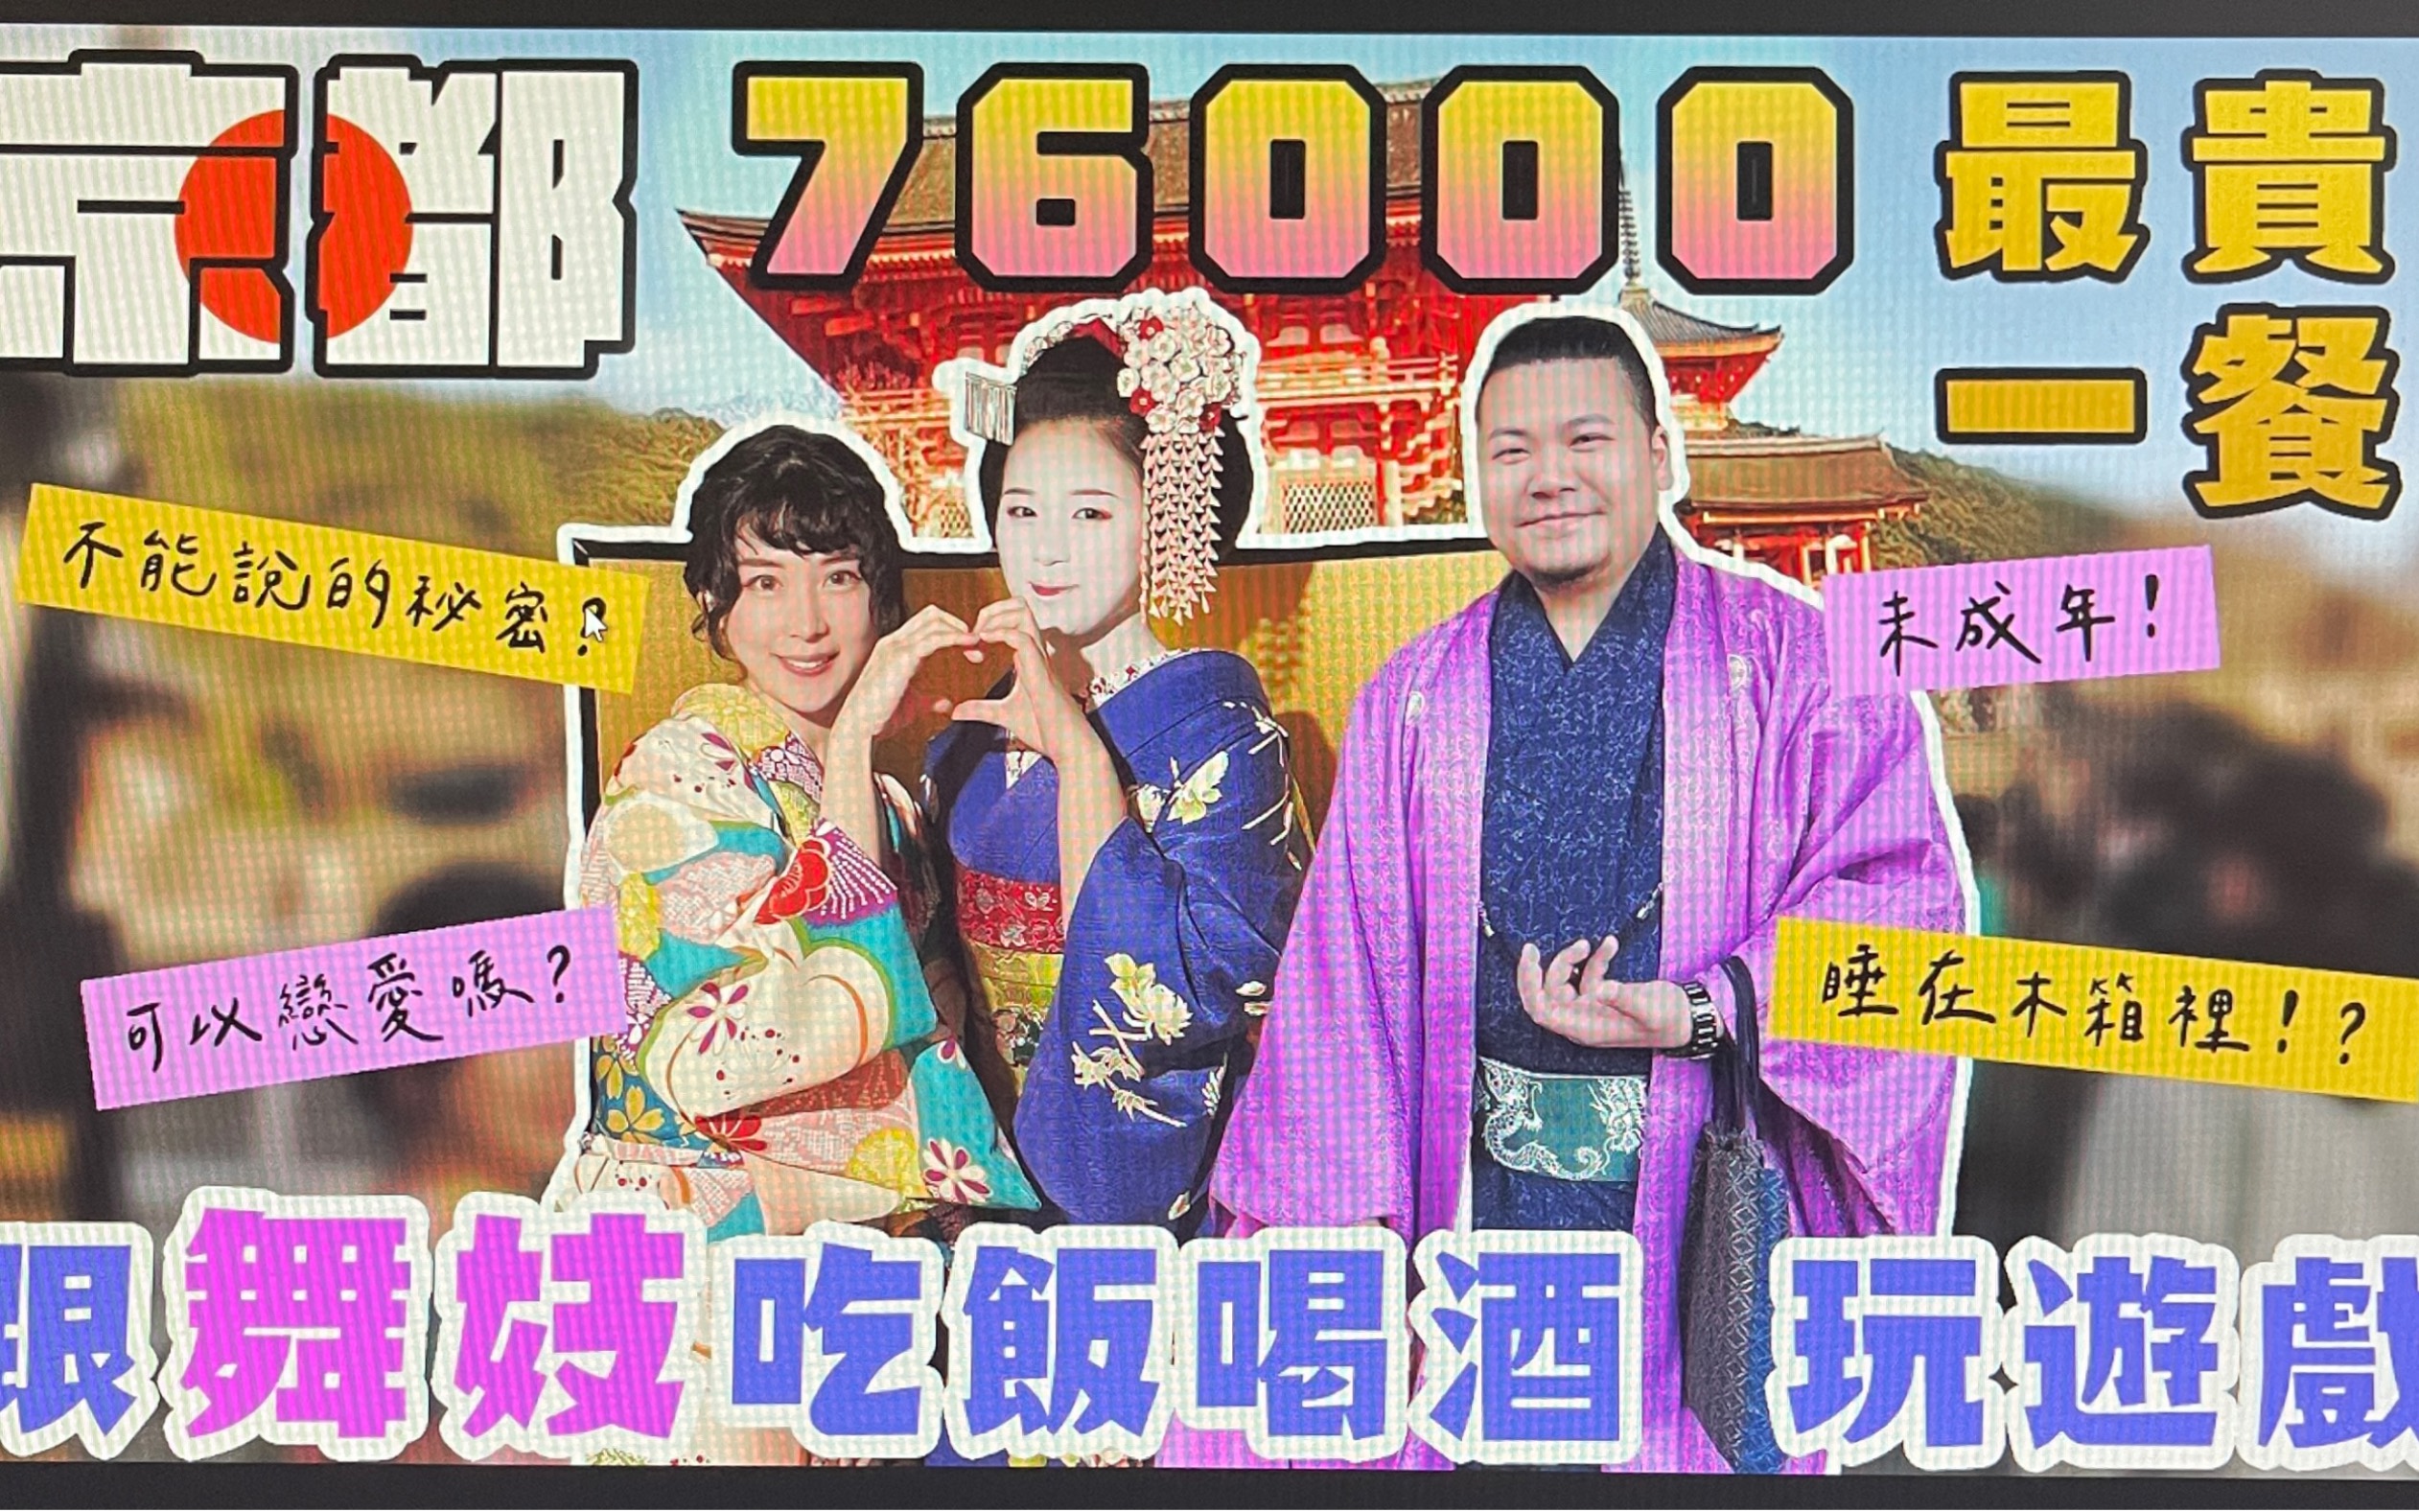 日本吃一餐2万元｜与京都 舞妓聊天喝酒玩游戏｜铁牛 杰哥